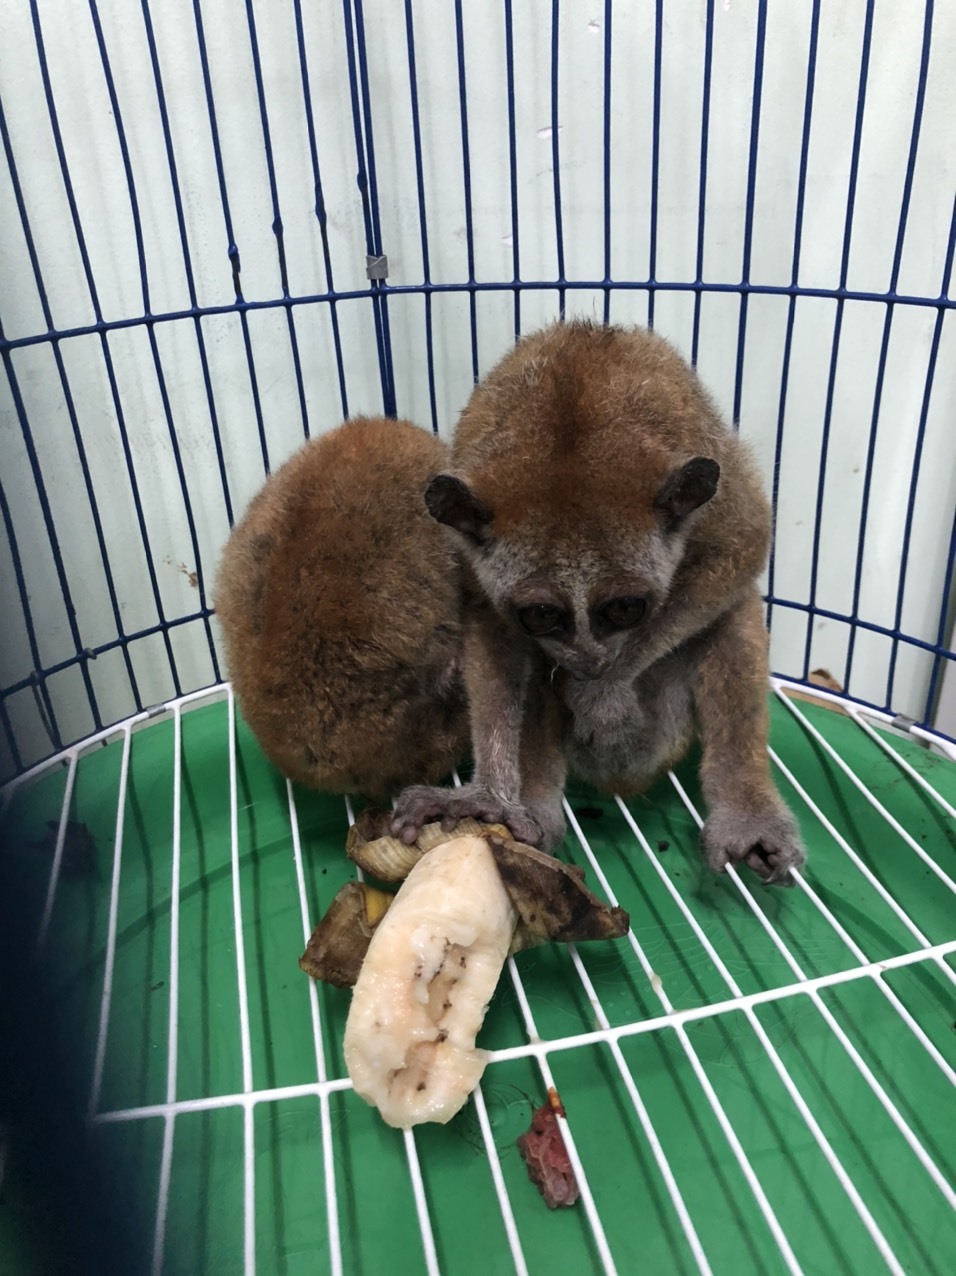 2 cá thể culi được giải cứu khỏi một đối tượng buôn bán động vật hoang dã trên Internet tại thành phố Thủ Dầu Một ngày 31.05.2020, Ảnh: ENV